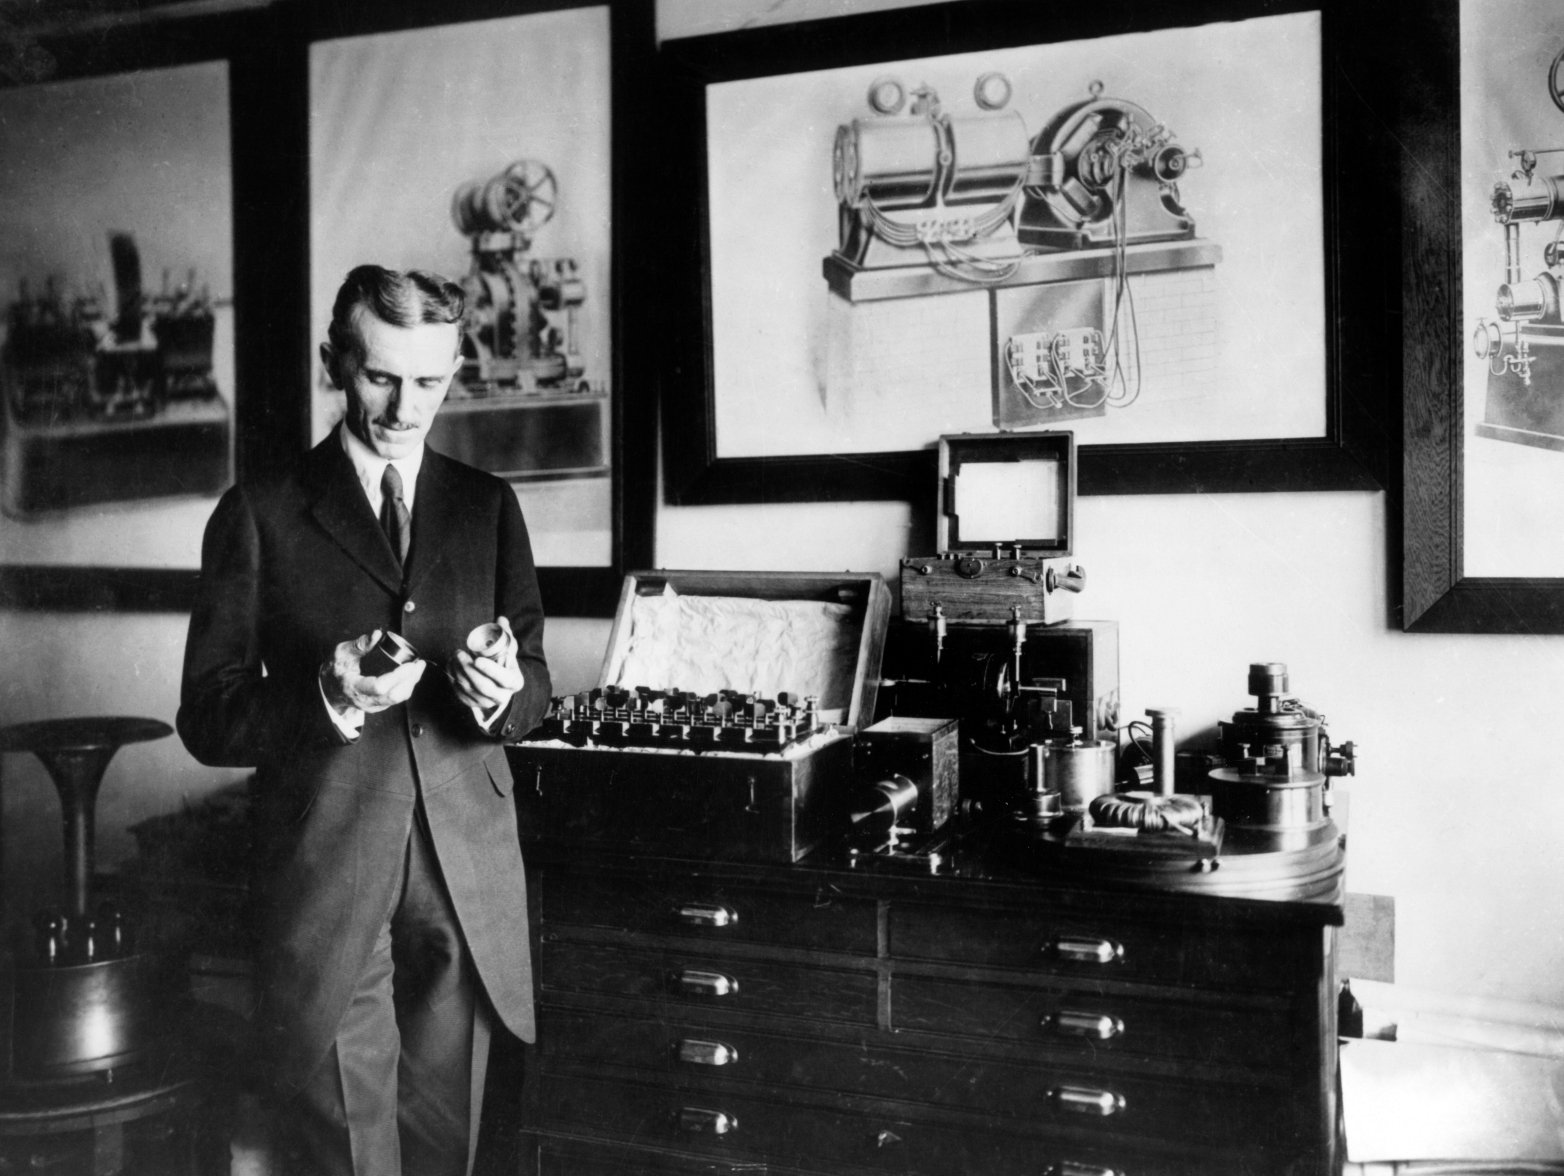 Nikola Tesla (1856-1943) di Laboratoriumnya di New York, c. 1910. Tesla adalah seorang penemu dan insinyur Serbia-Amerika yang terkenal karena karyanya pada pasokan listrik arus bolak-balik (AC). © Alamy | Lisensi berlaku mulai 15 Agustus 2022